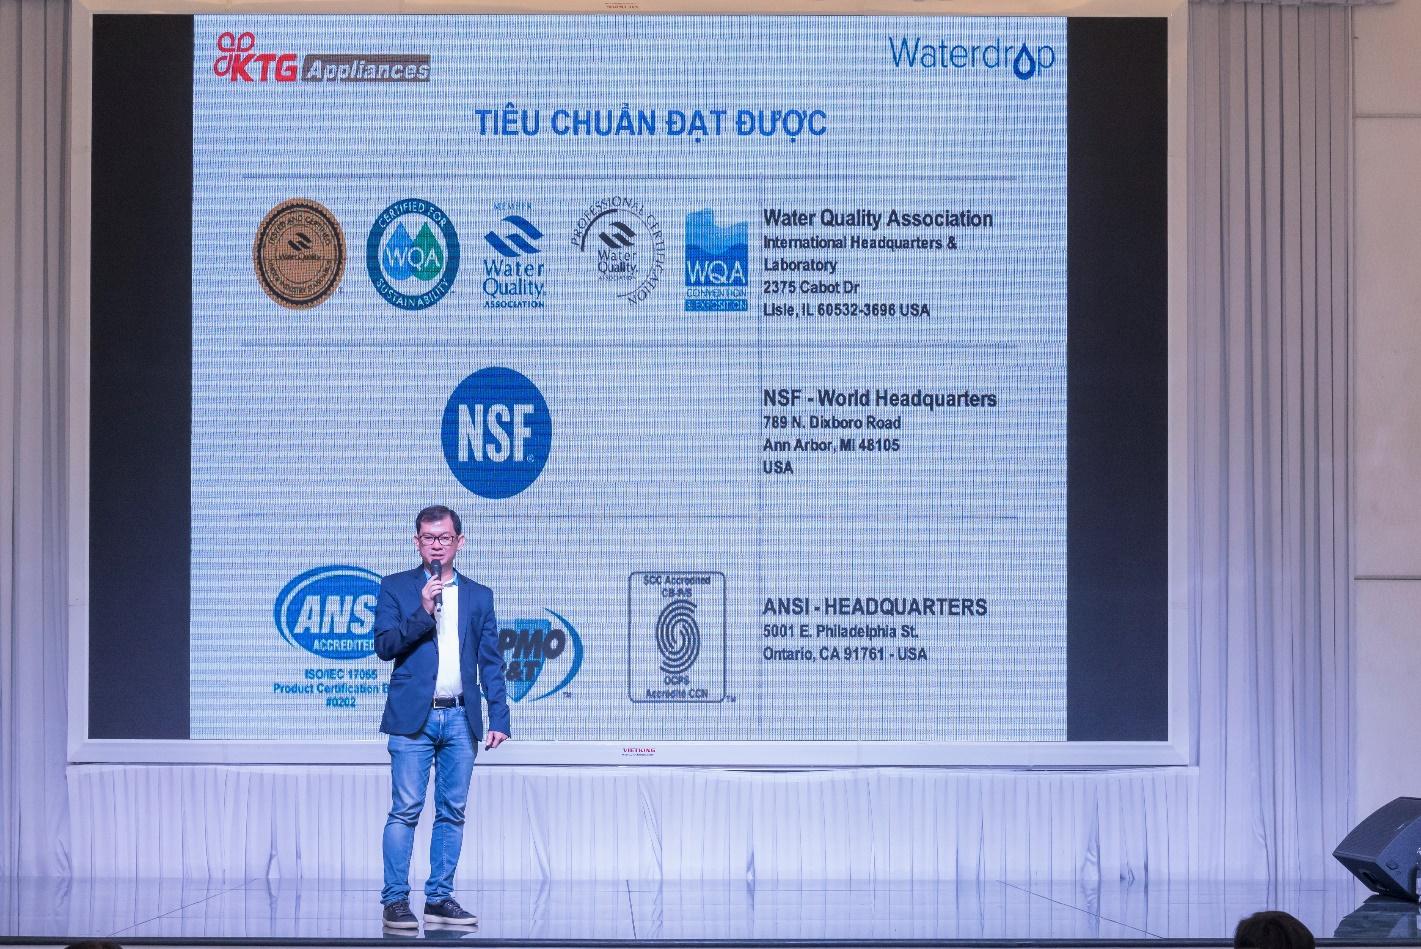 Ra mắt thương hiệu máy lọc nước Waterdrop tại Việt Nam-3